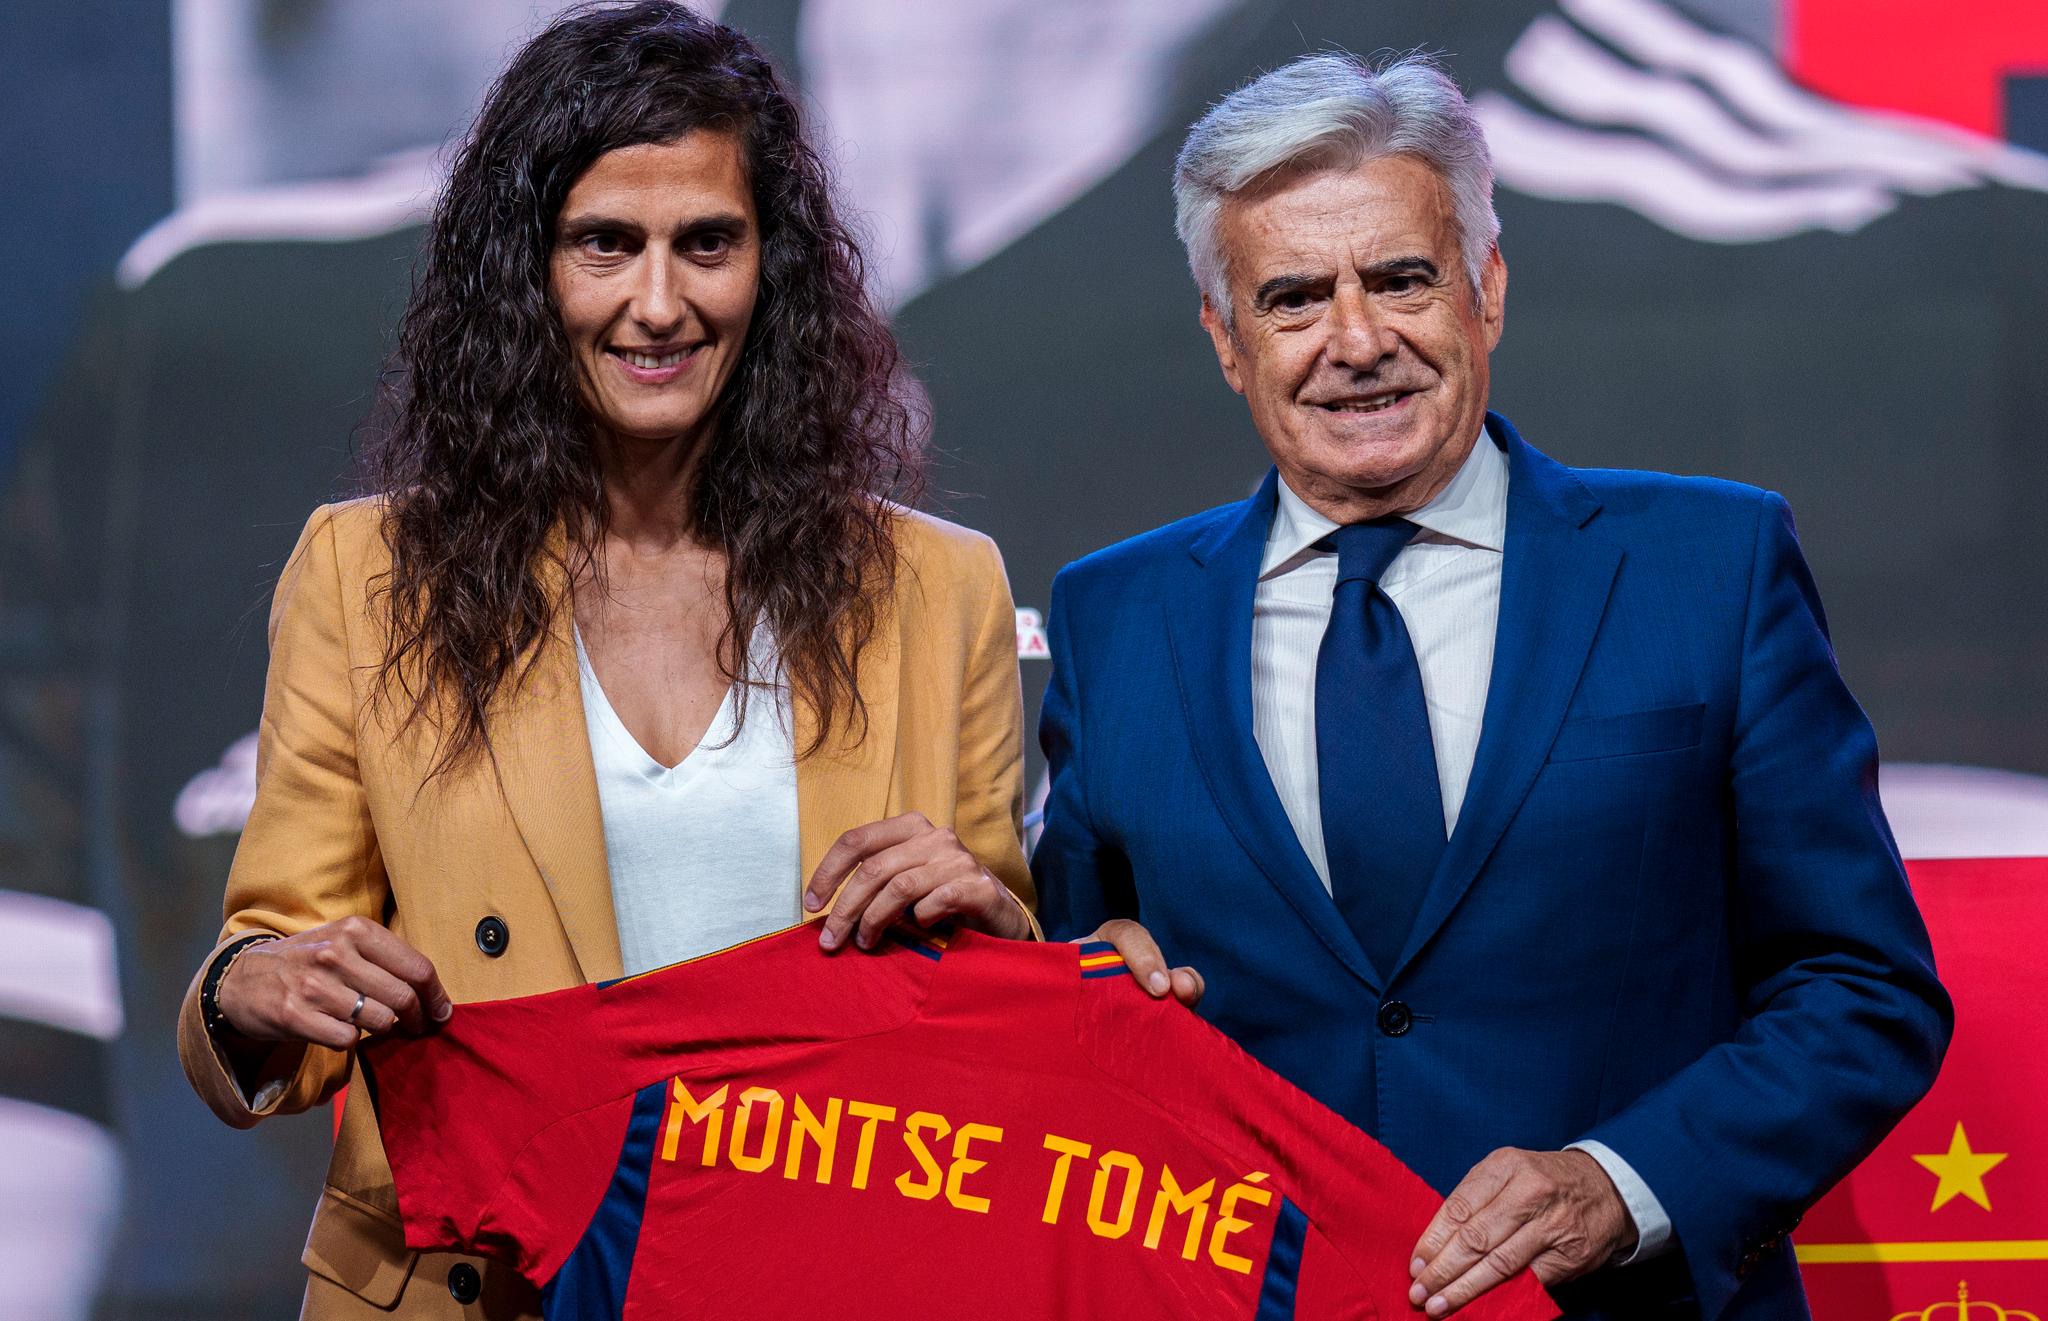  Den nye landslagssjefen Montse Tome og fungerende fotballpresident, Pedro Rocha, under uttaket av landslagstroppen mandag.